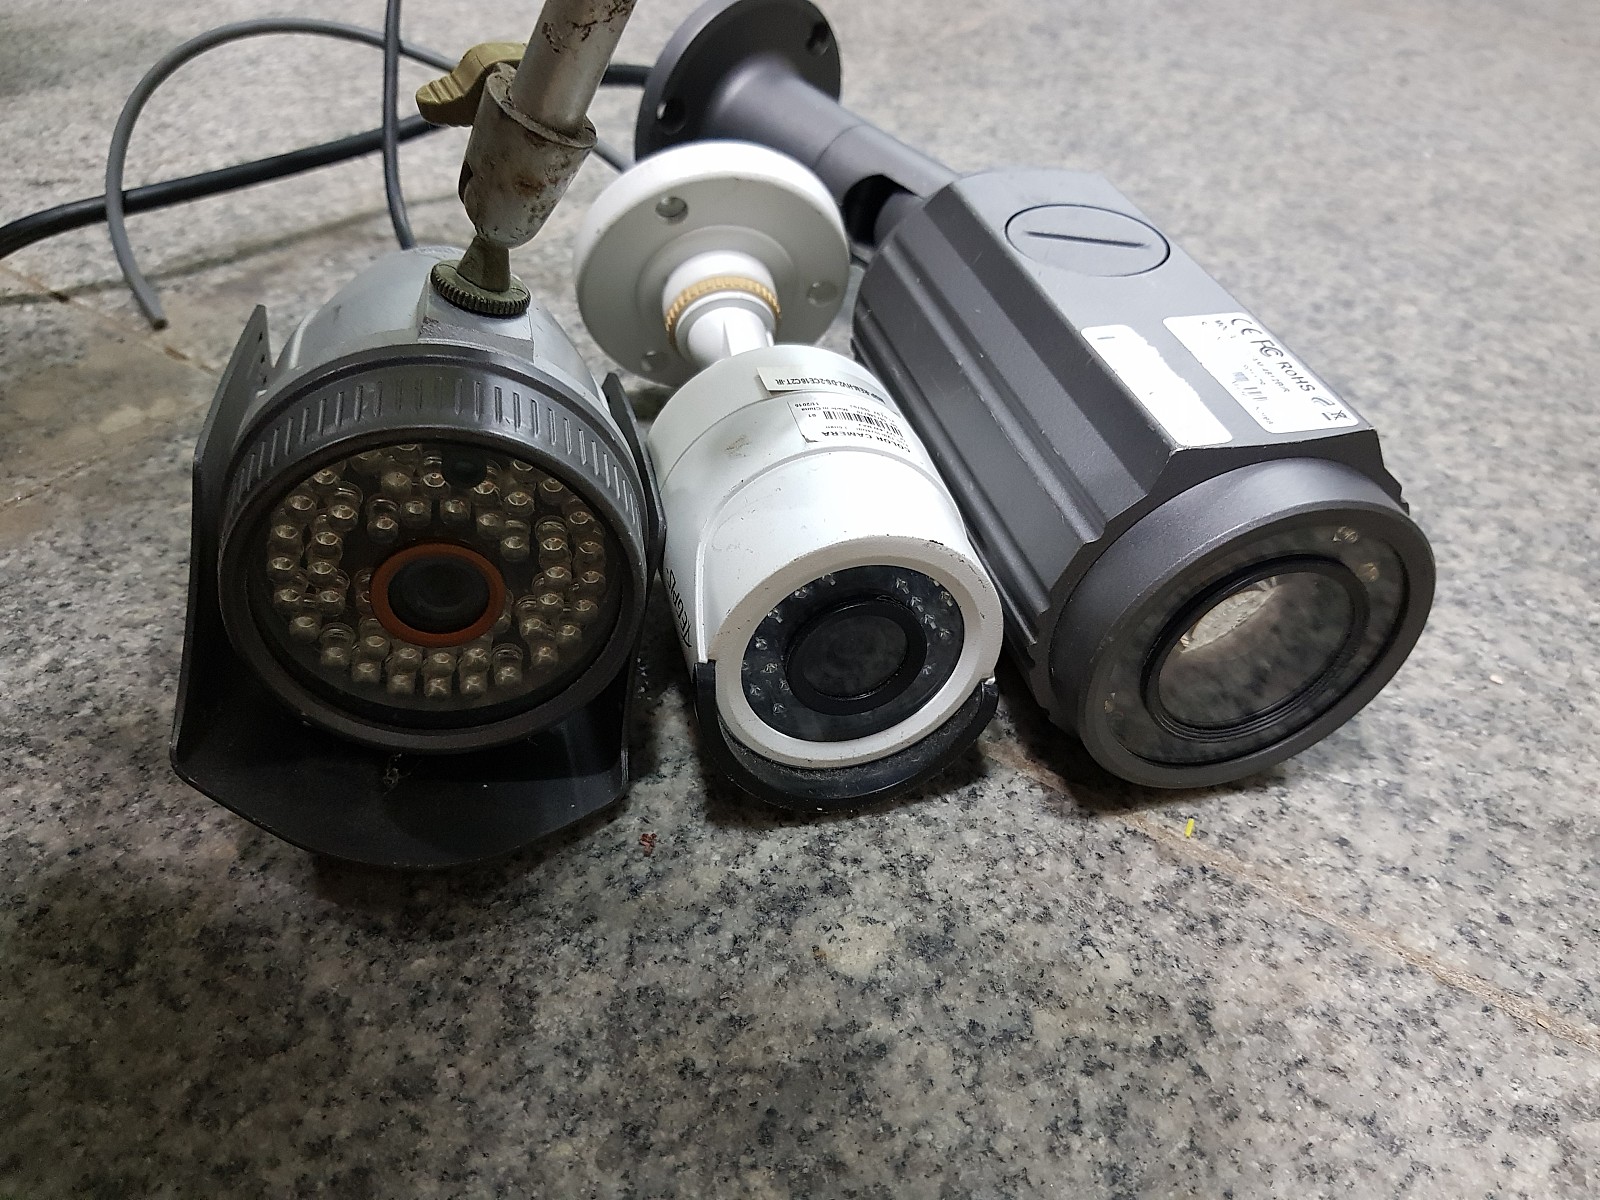 적외선 카메라 3대 부품용 수리용도 가격인하